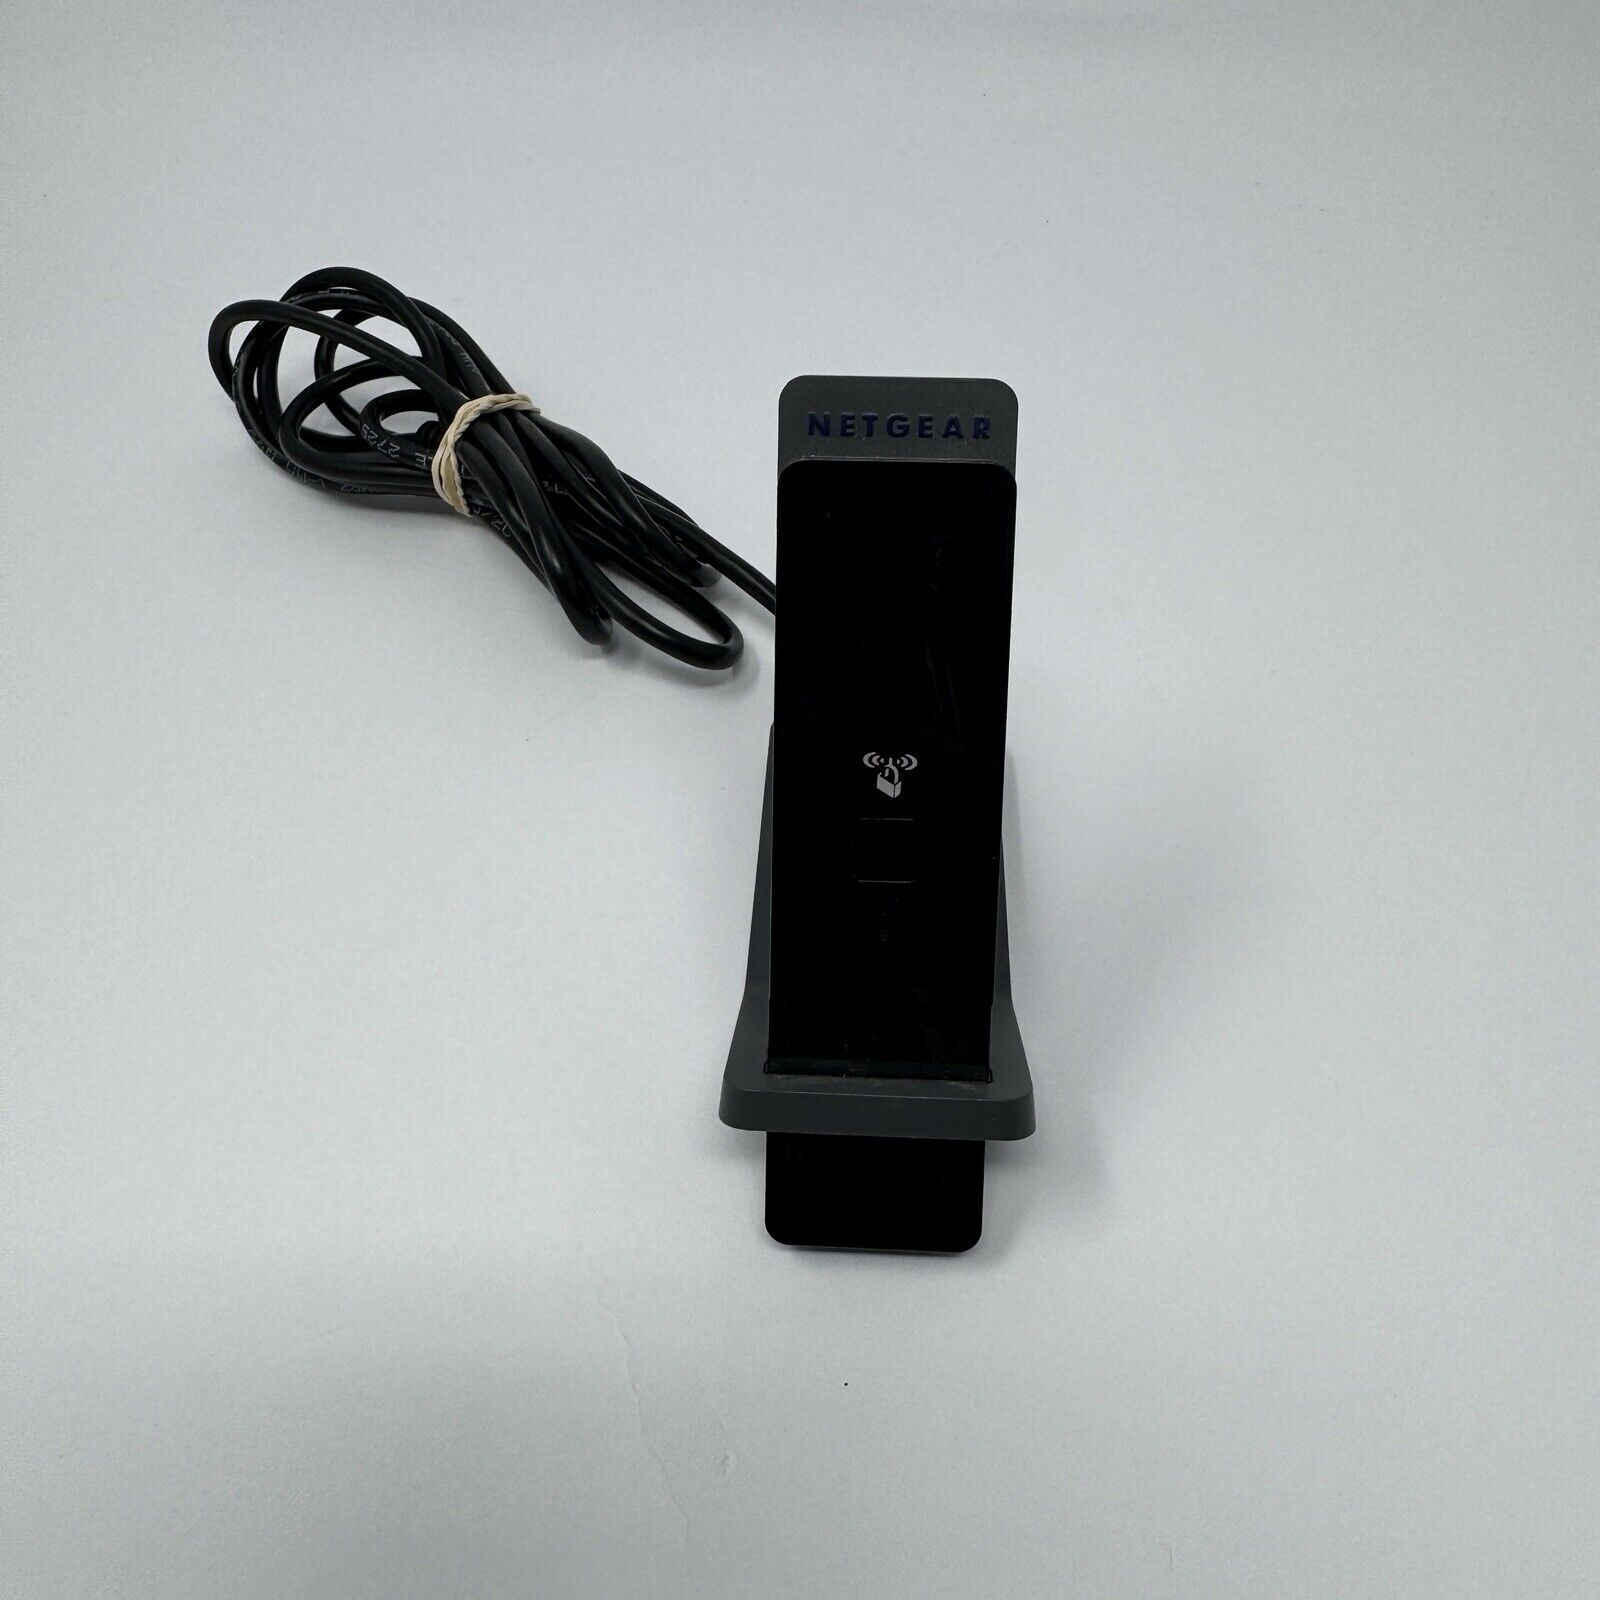 NetGear N-300 Wireless WiFi USB Adapter WNA3100 W Dock Cradle Stand 